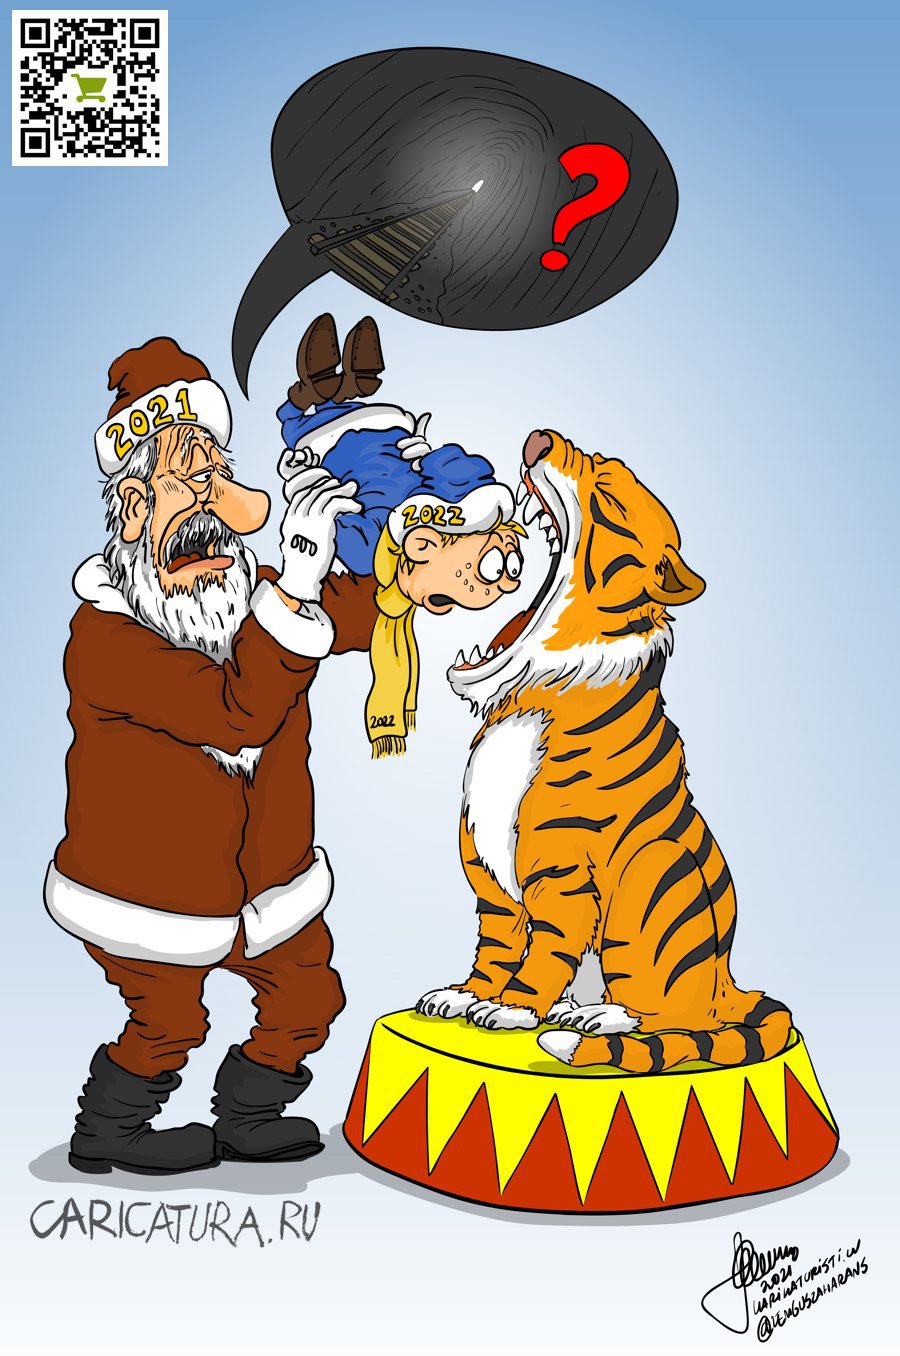 Карикатура "Год Тигра", Zemgus Zaharans